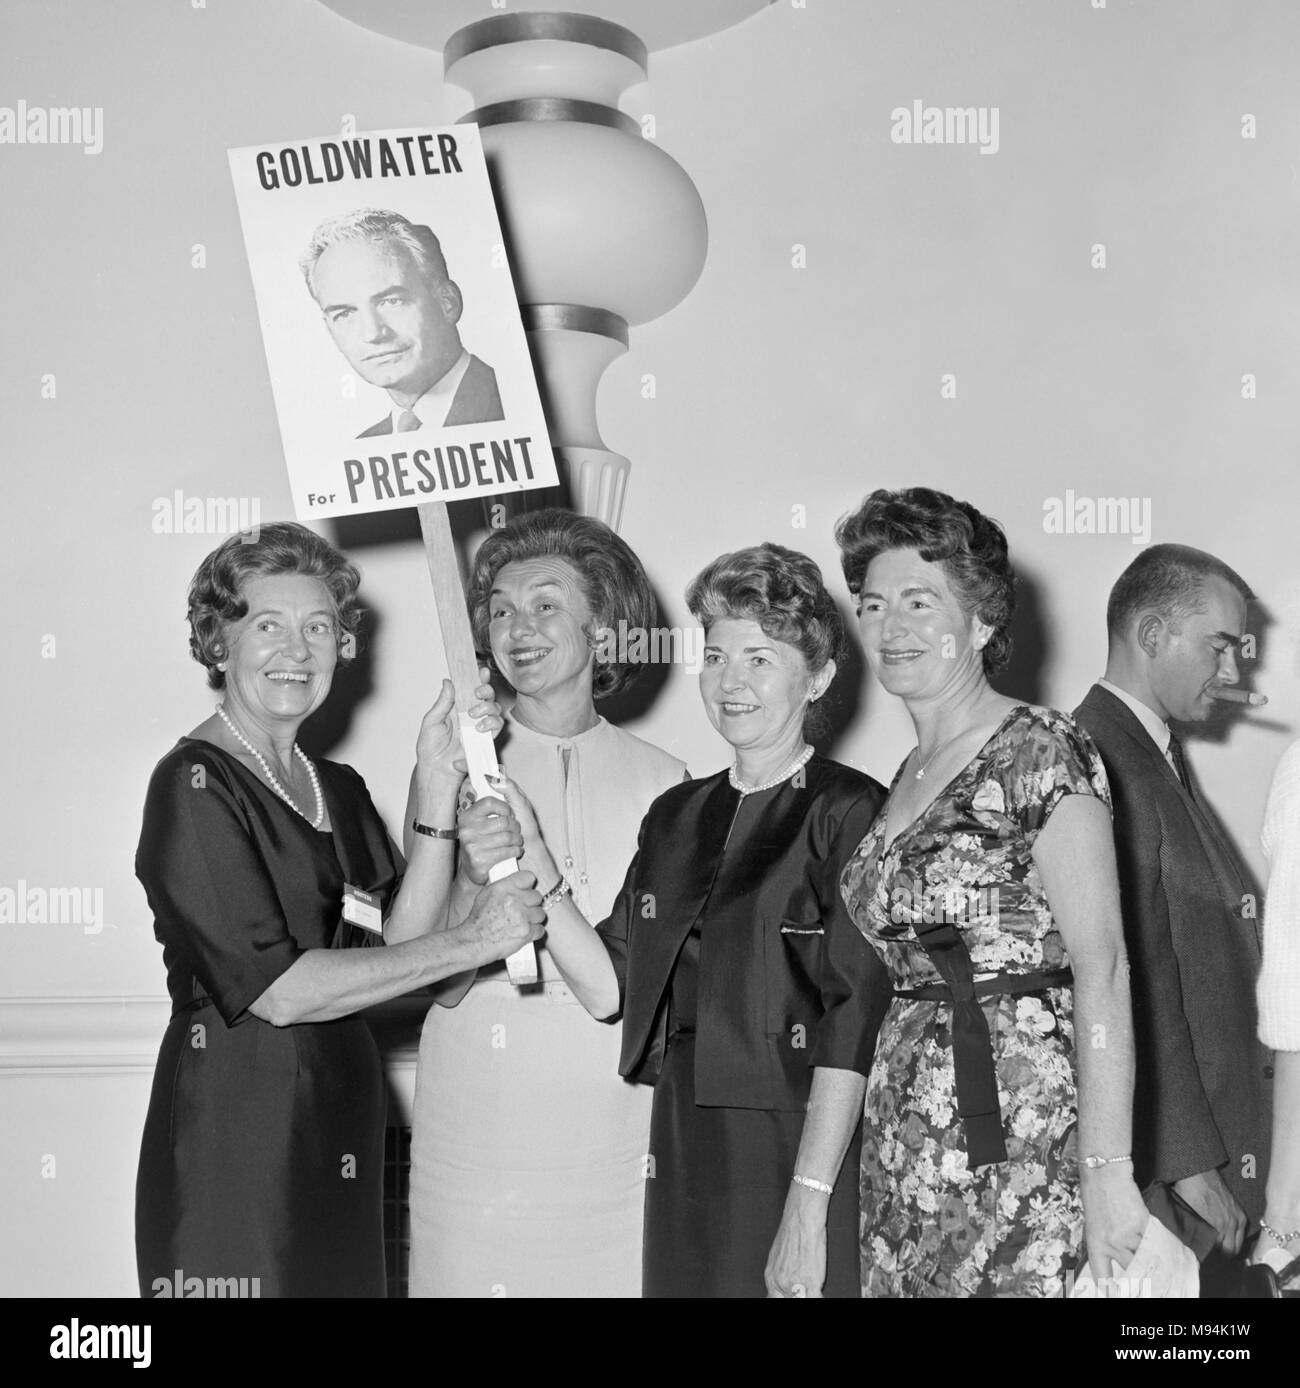 Frauen für den US-Präsidentschaftskandidaten Barry Goldwater ihre Begeisterung bei einer Veranstaltung in Kalifornien im Jahr 1964 zeigen. Stockfoto